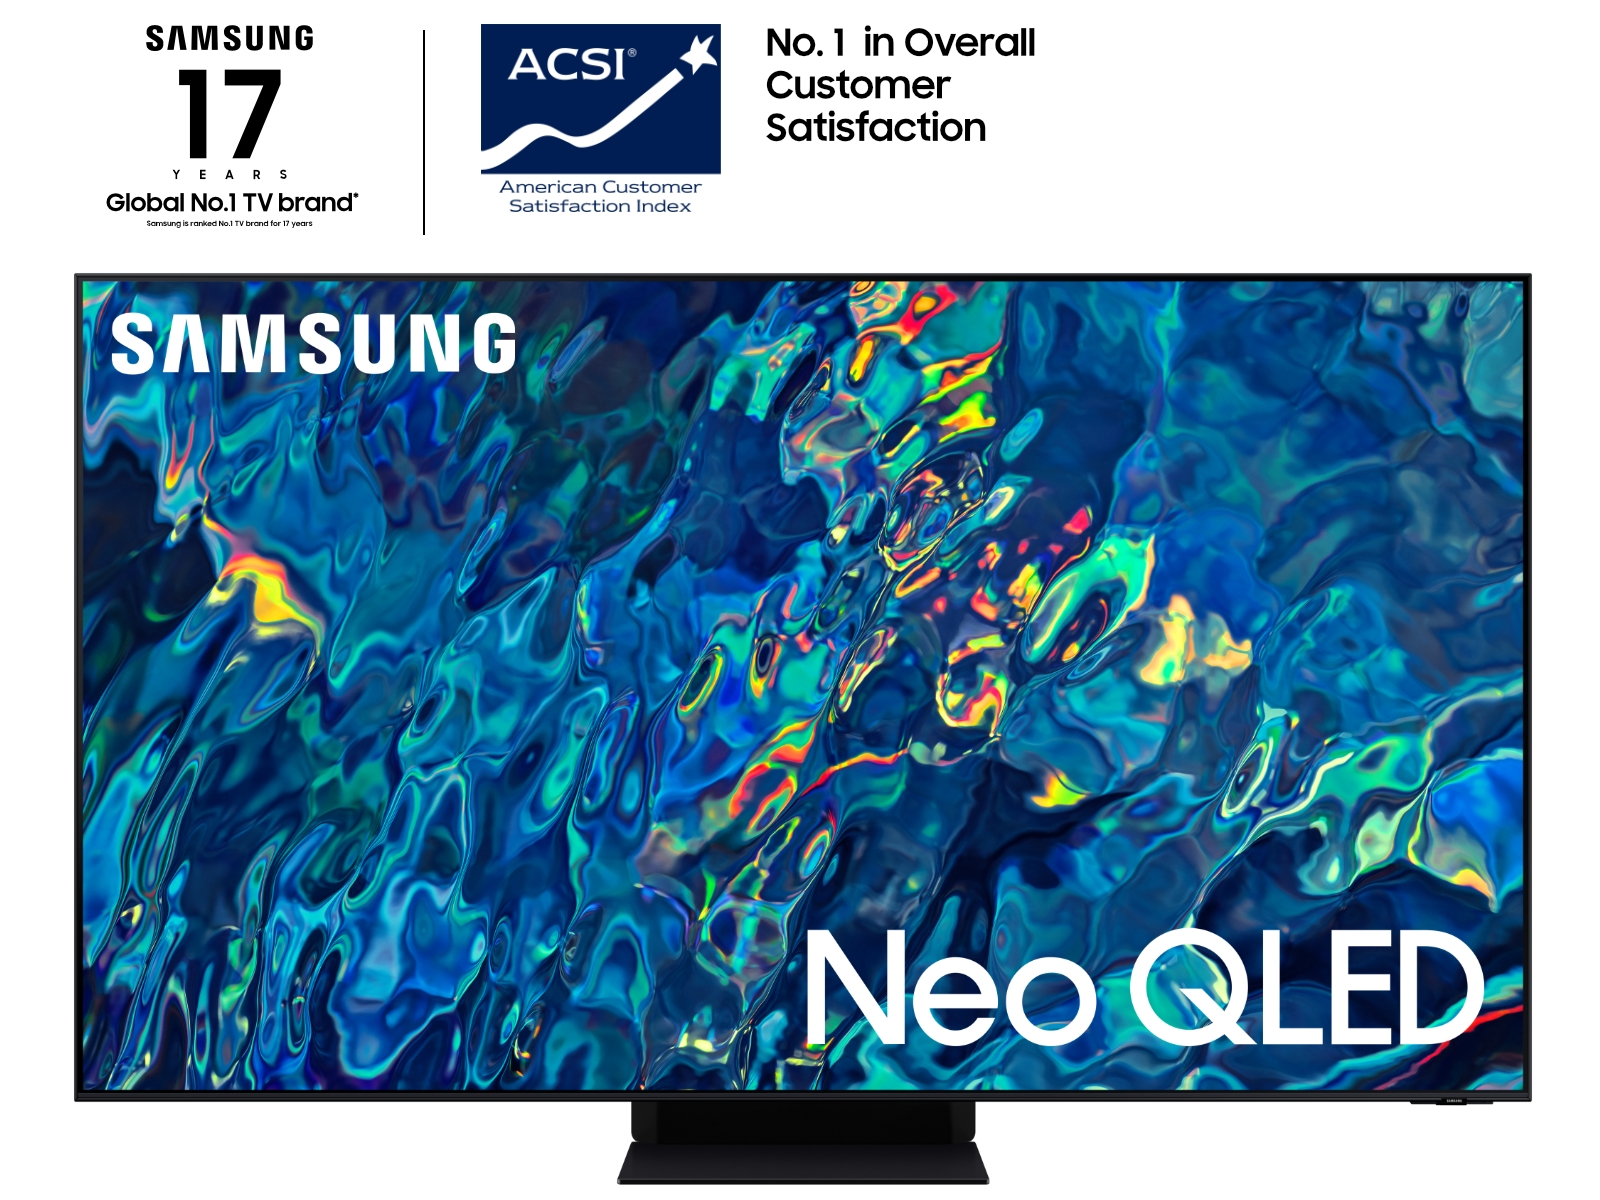 EPP - Samsung 65” QN95B Neo QLED 4K Smart TV $1,119.99 at Samsung